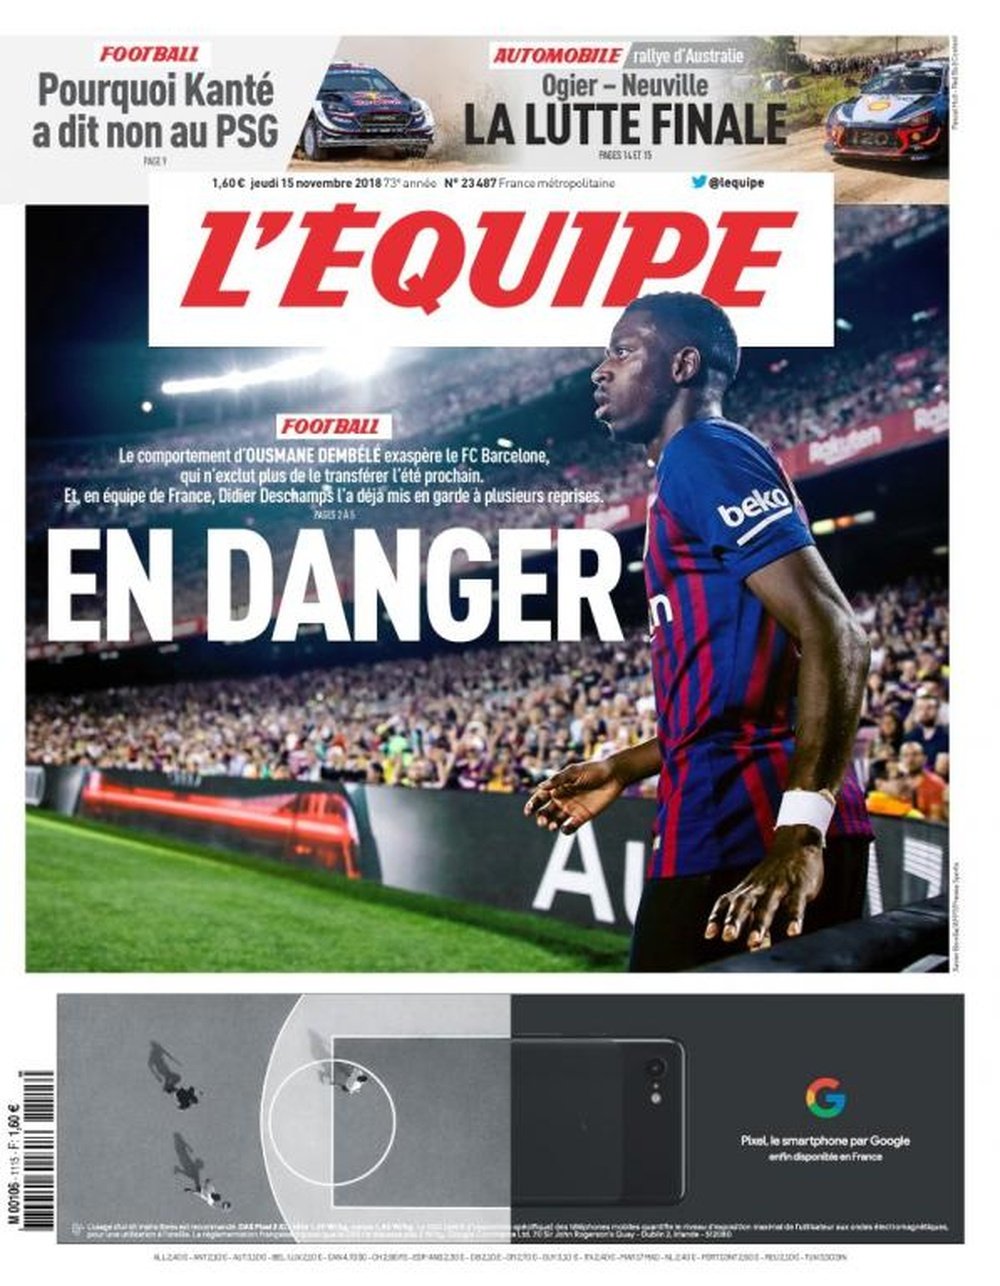 Dembélé estampa a capa do 'L'Équipe'. LÉquipe'